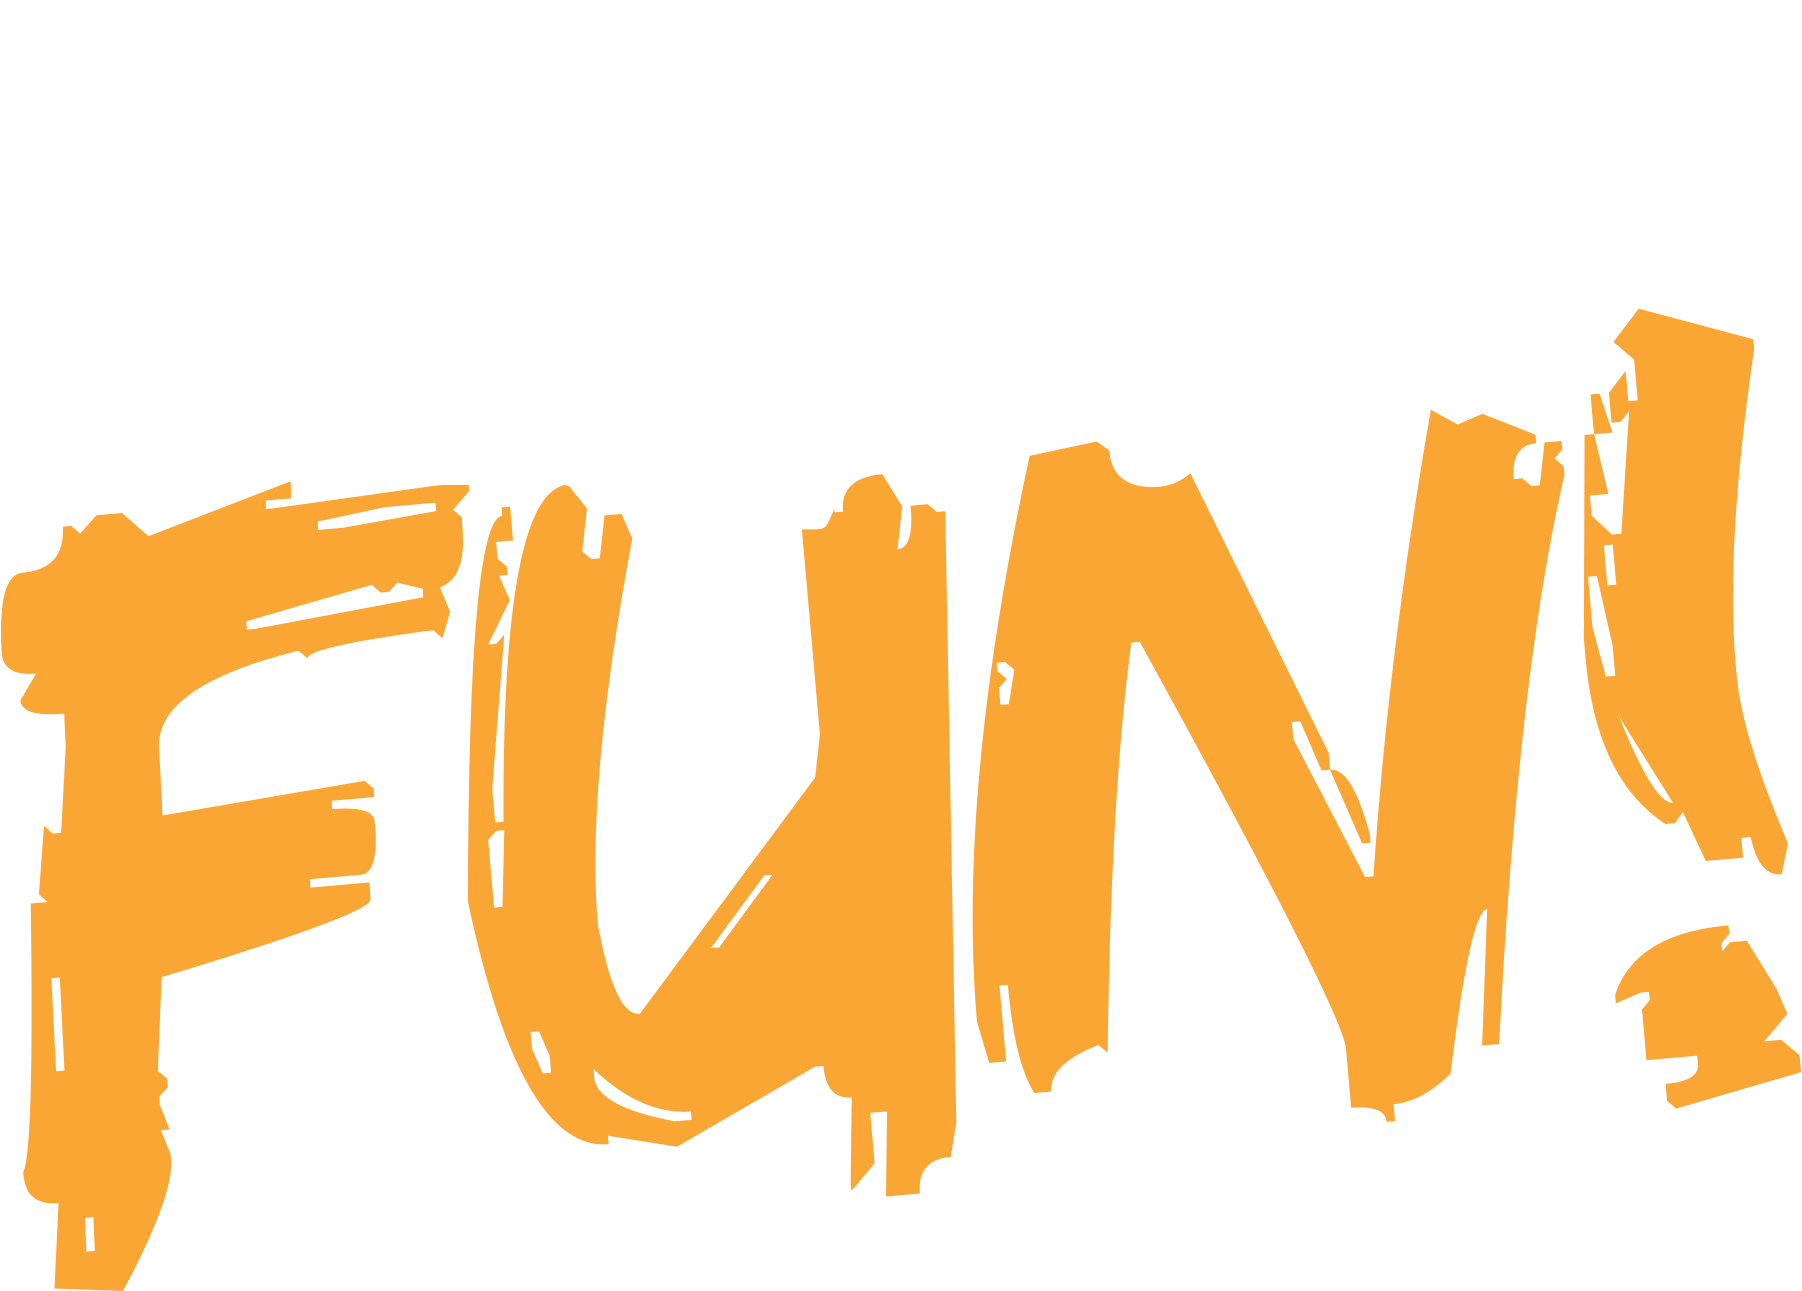 Summer Safety Fair Fun!